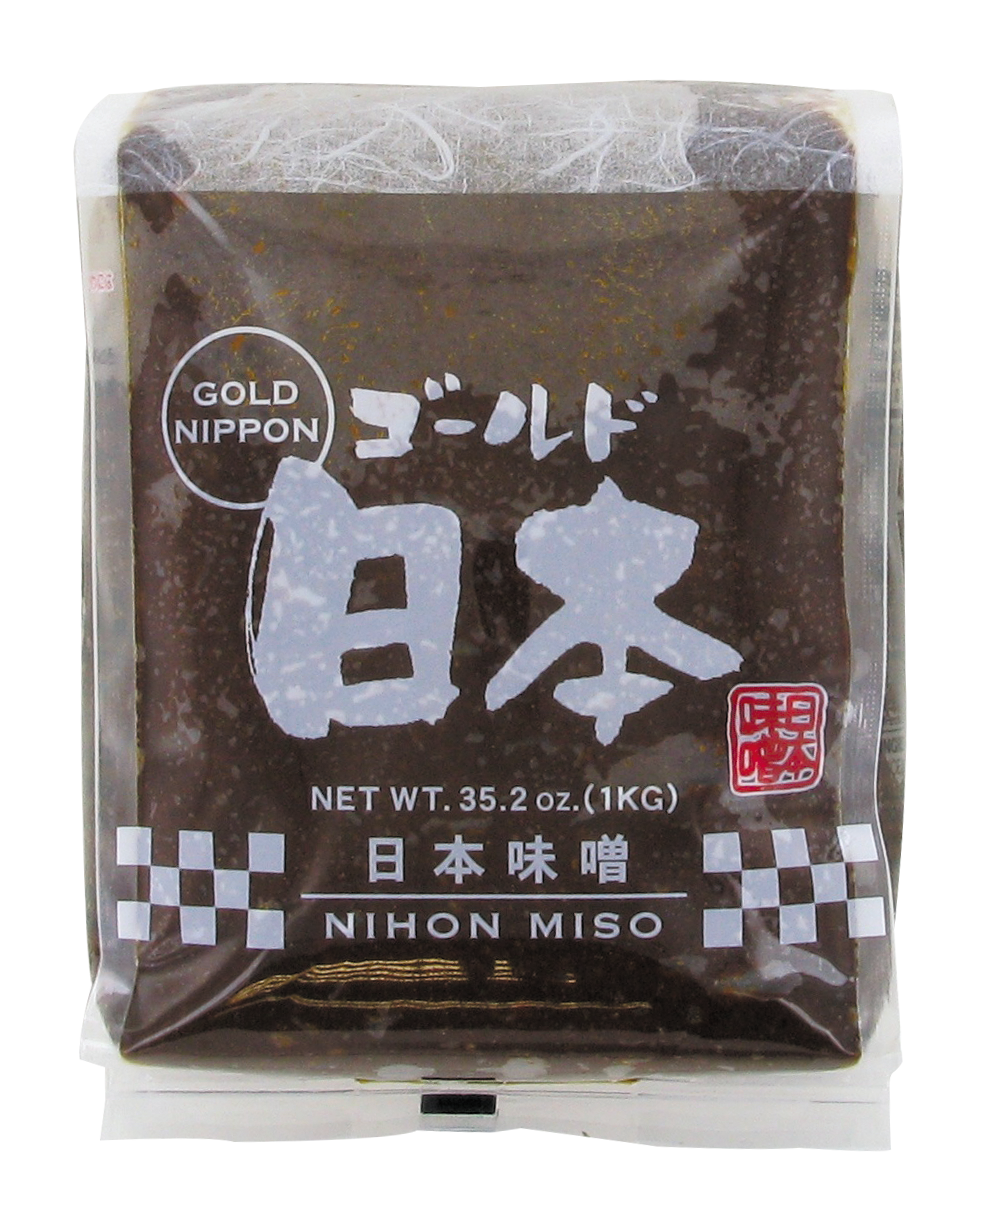 Pâte Miso rouge (红色味噌酱) NIHON MISO - Épicerie sucrée et salée, Sauces -  Tang Frères